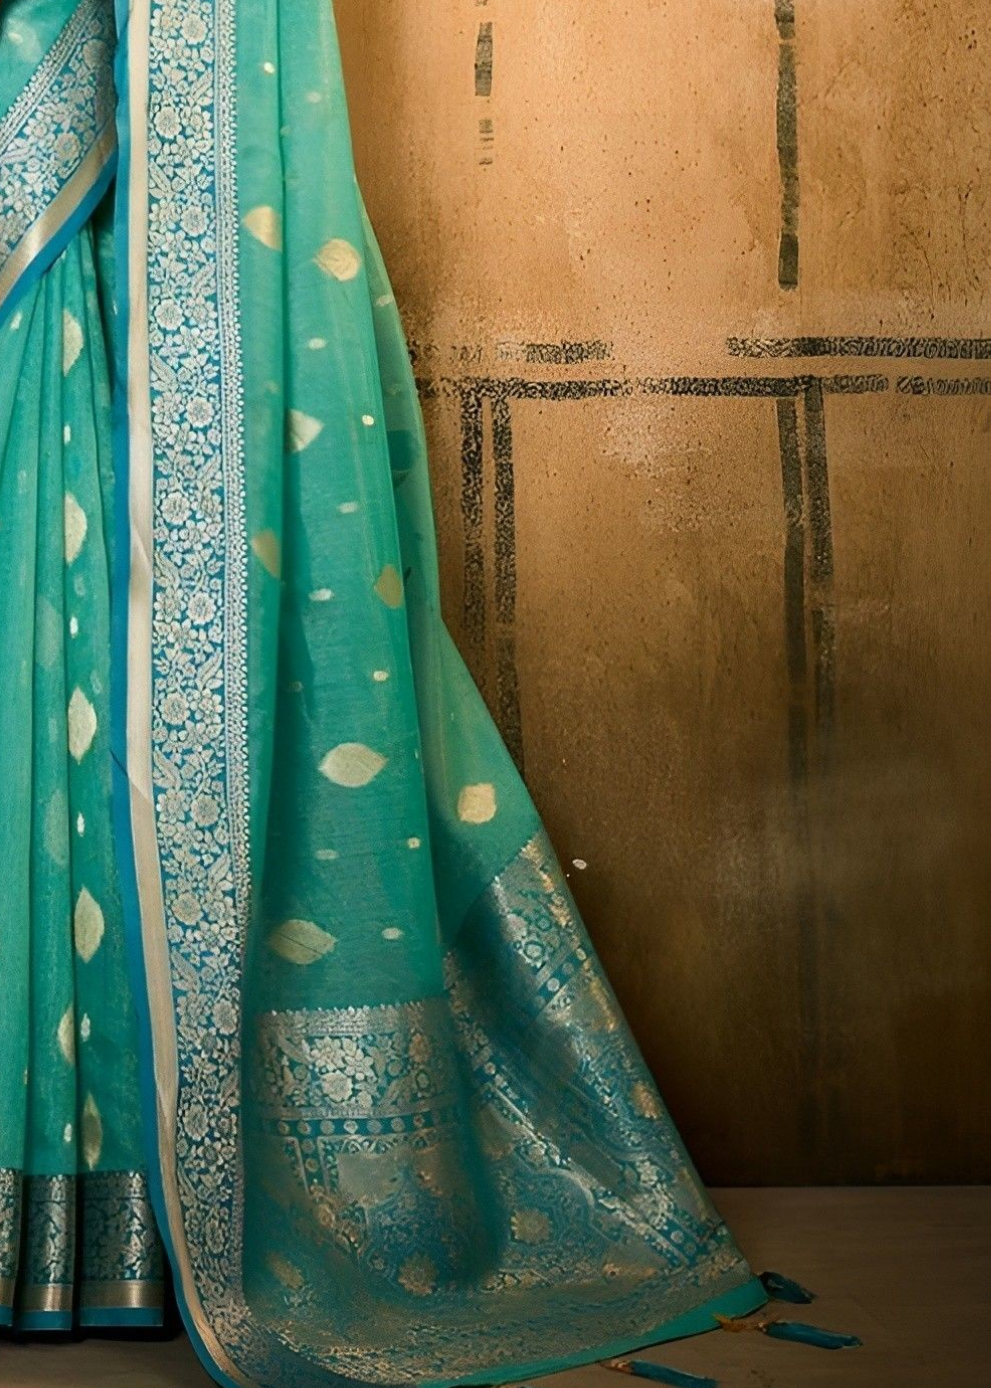 EKKTARA Saree For Women Misty Teal Green Banarasi Tissue Saree